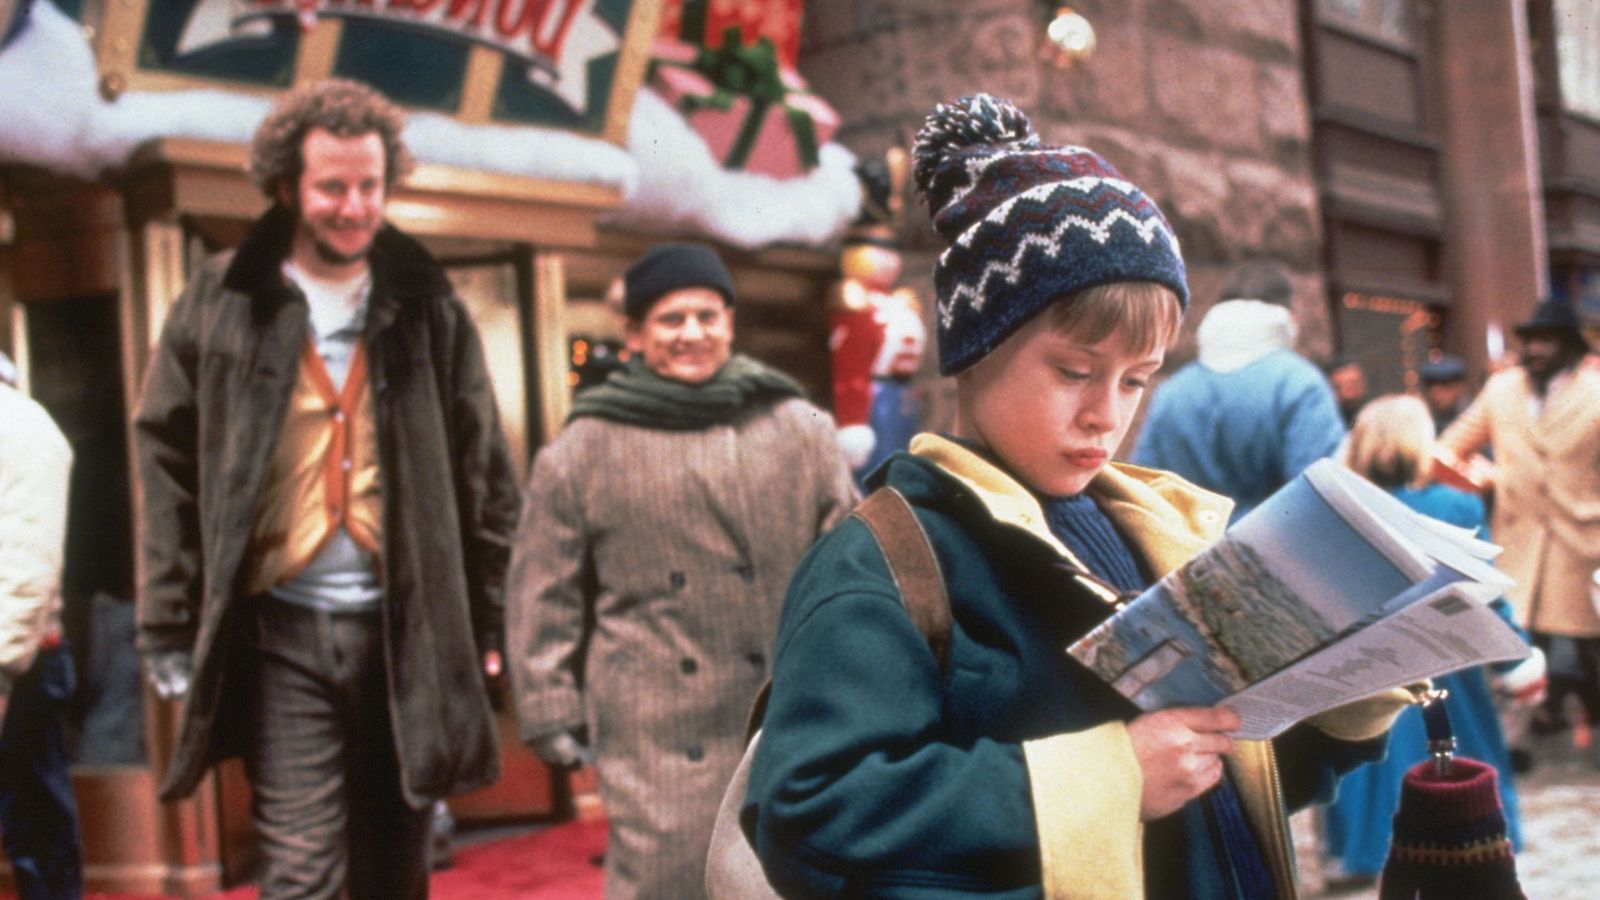 سکانس مربوط به حضور کوتاه دونالد ترامپ، رییس جمهور ایالات متحده در کمدی کلاسیک «تنها در خانه 2: گمشده در نیویورک سیتی» (Home Alone 2: Lost in New York City) که یک فیلم با بن مایه جشن و تعطیلات کریسمس است در بازپخش این فیلم در کانادا حذف شد